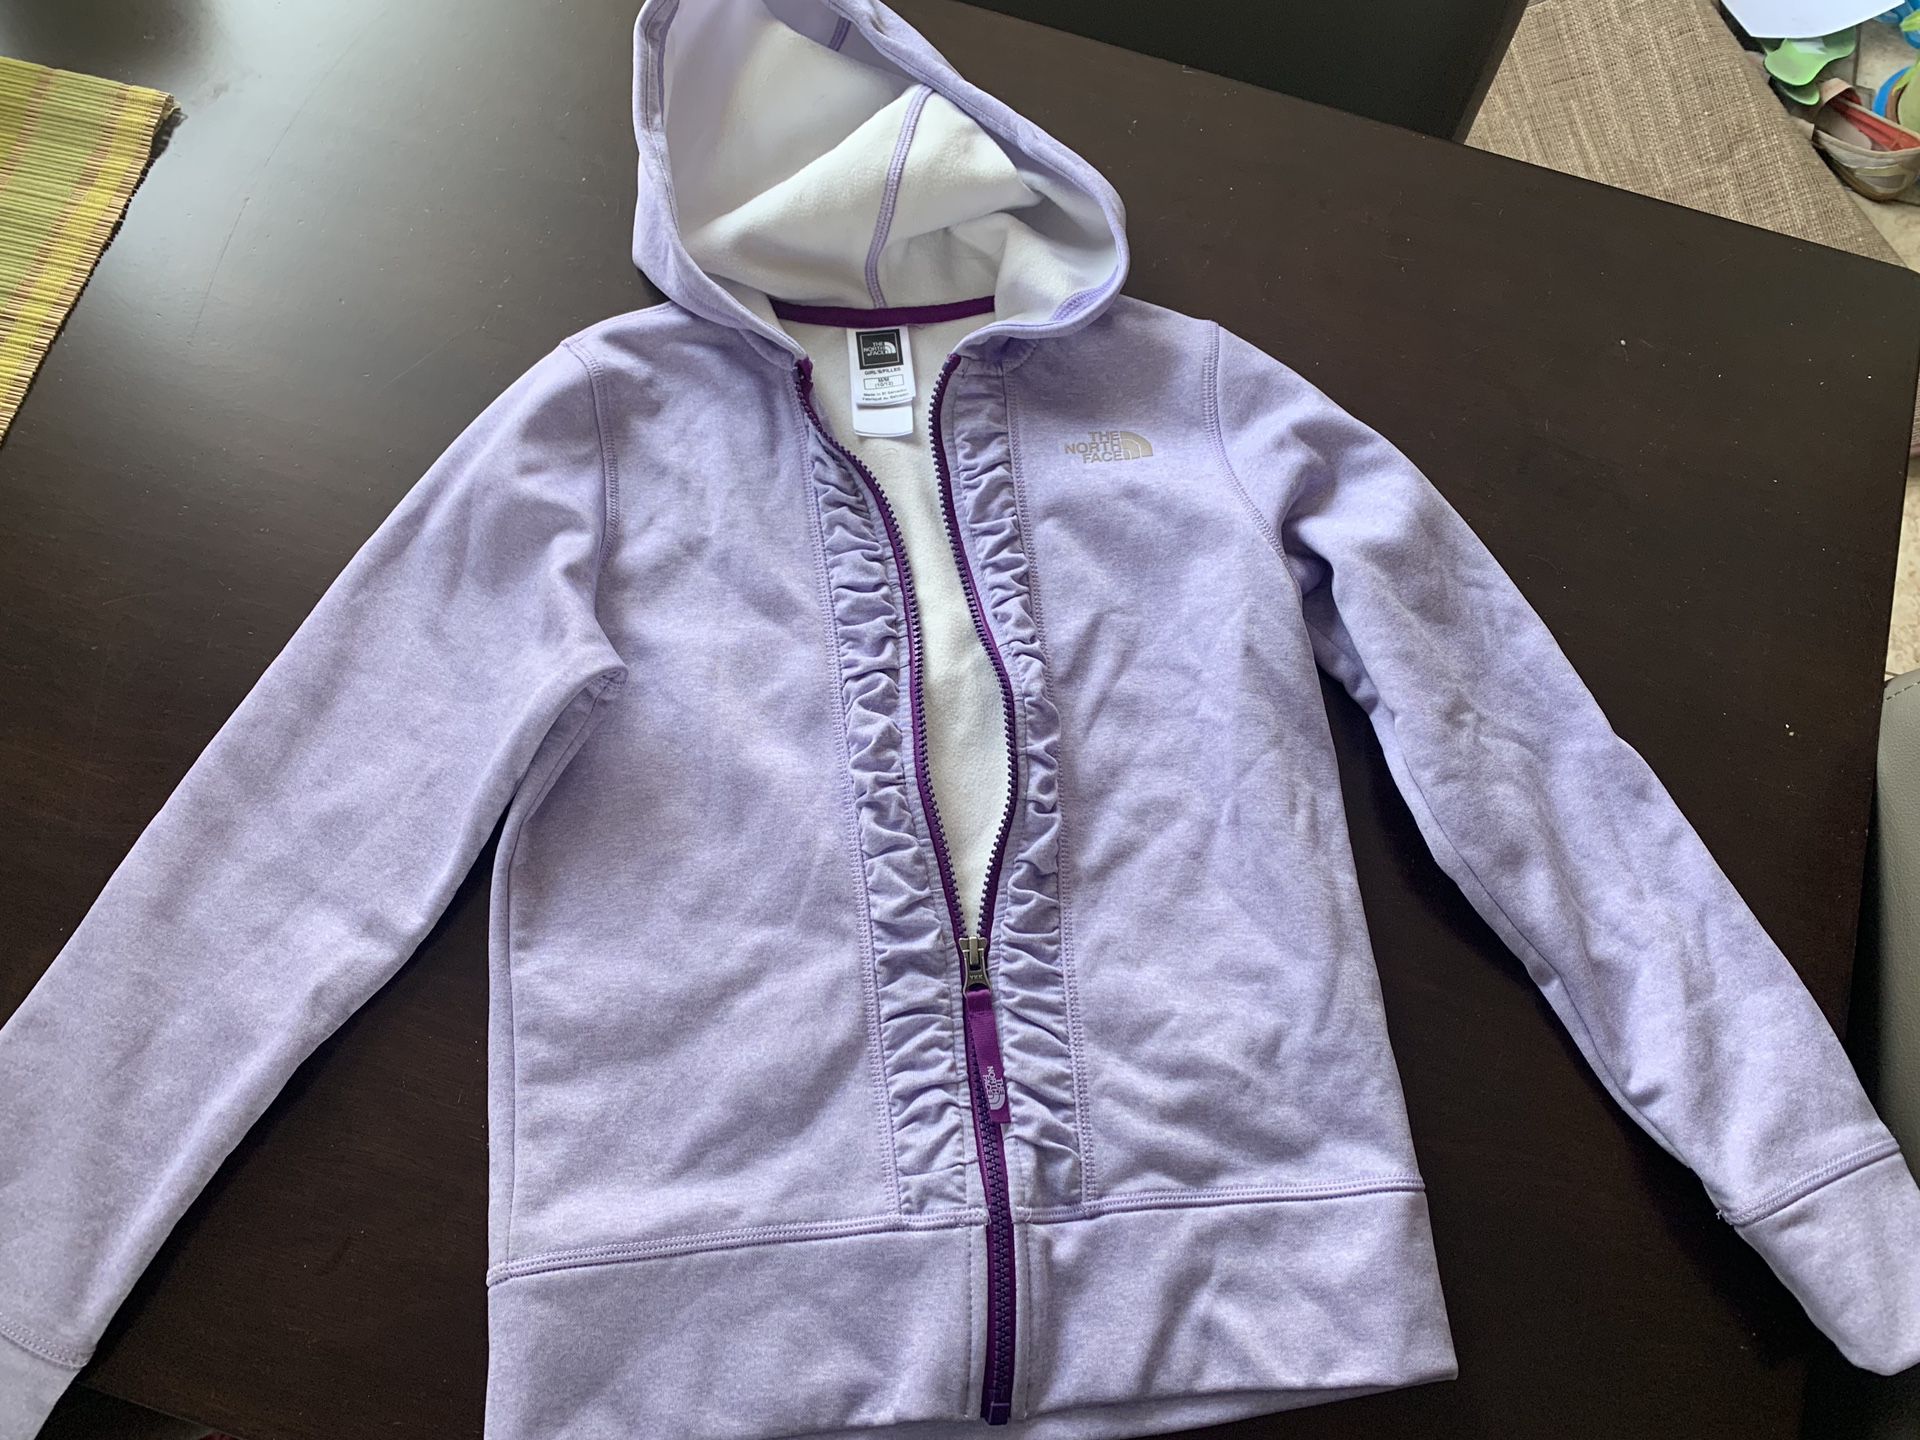 Purple NF jacket/zip up hoodie